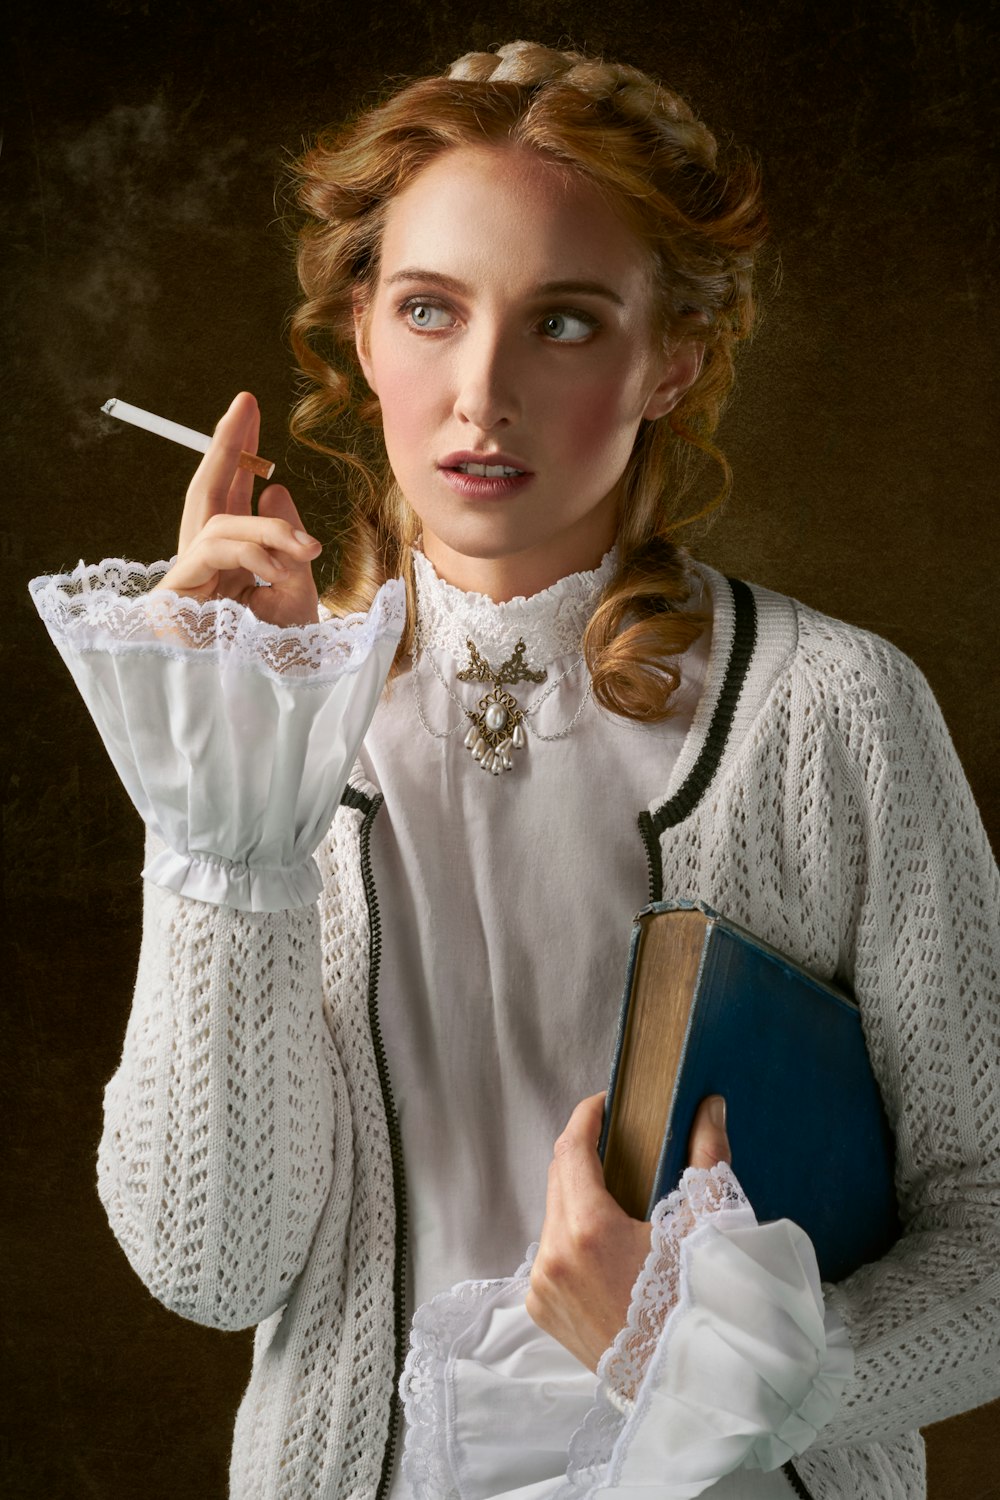 タバコを手にした女性と本の写真